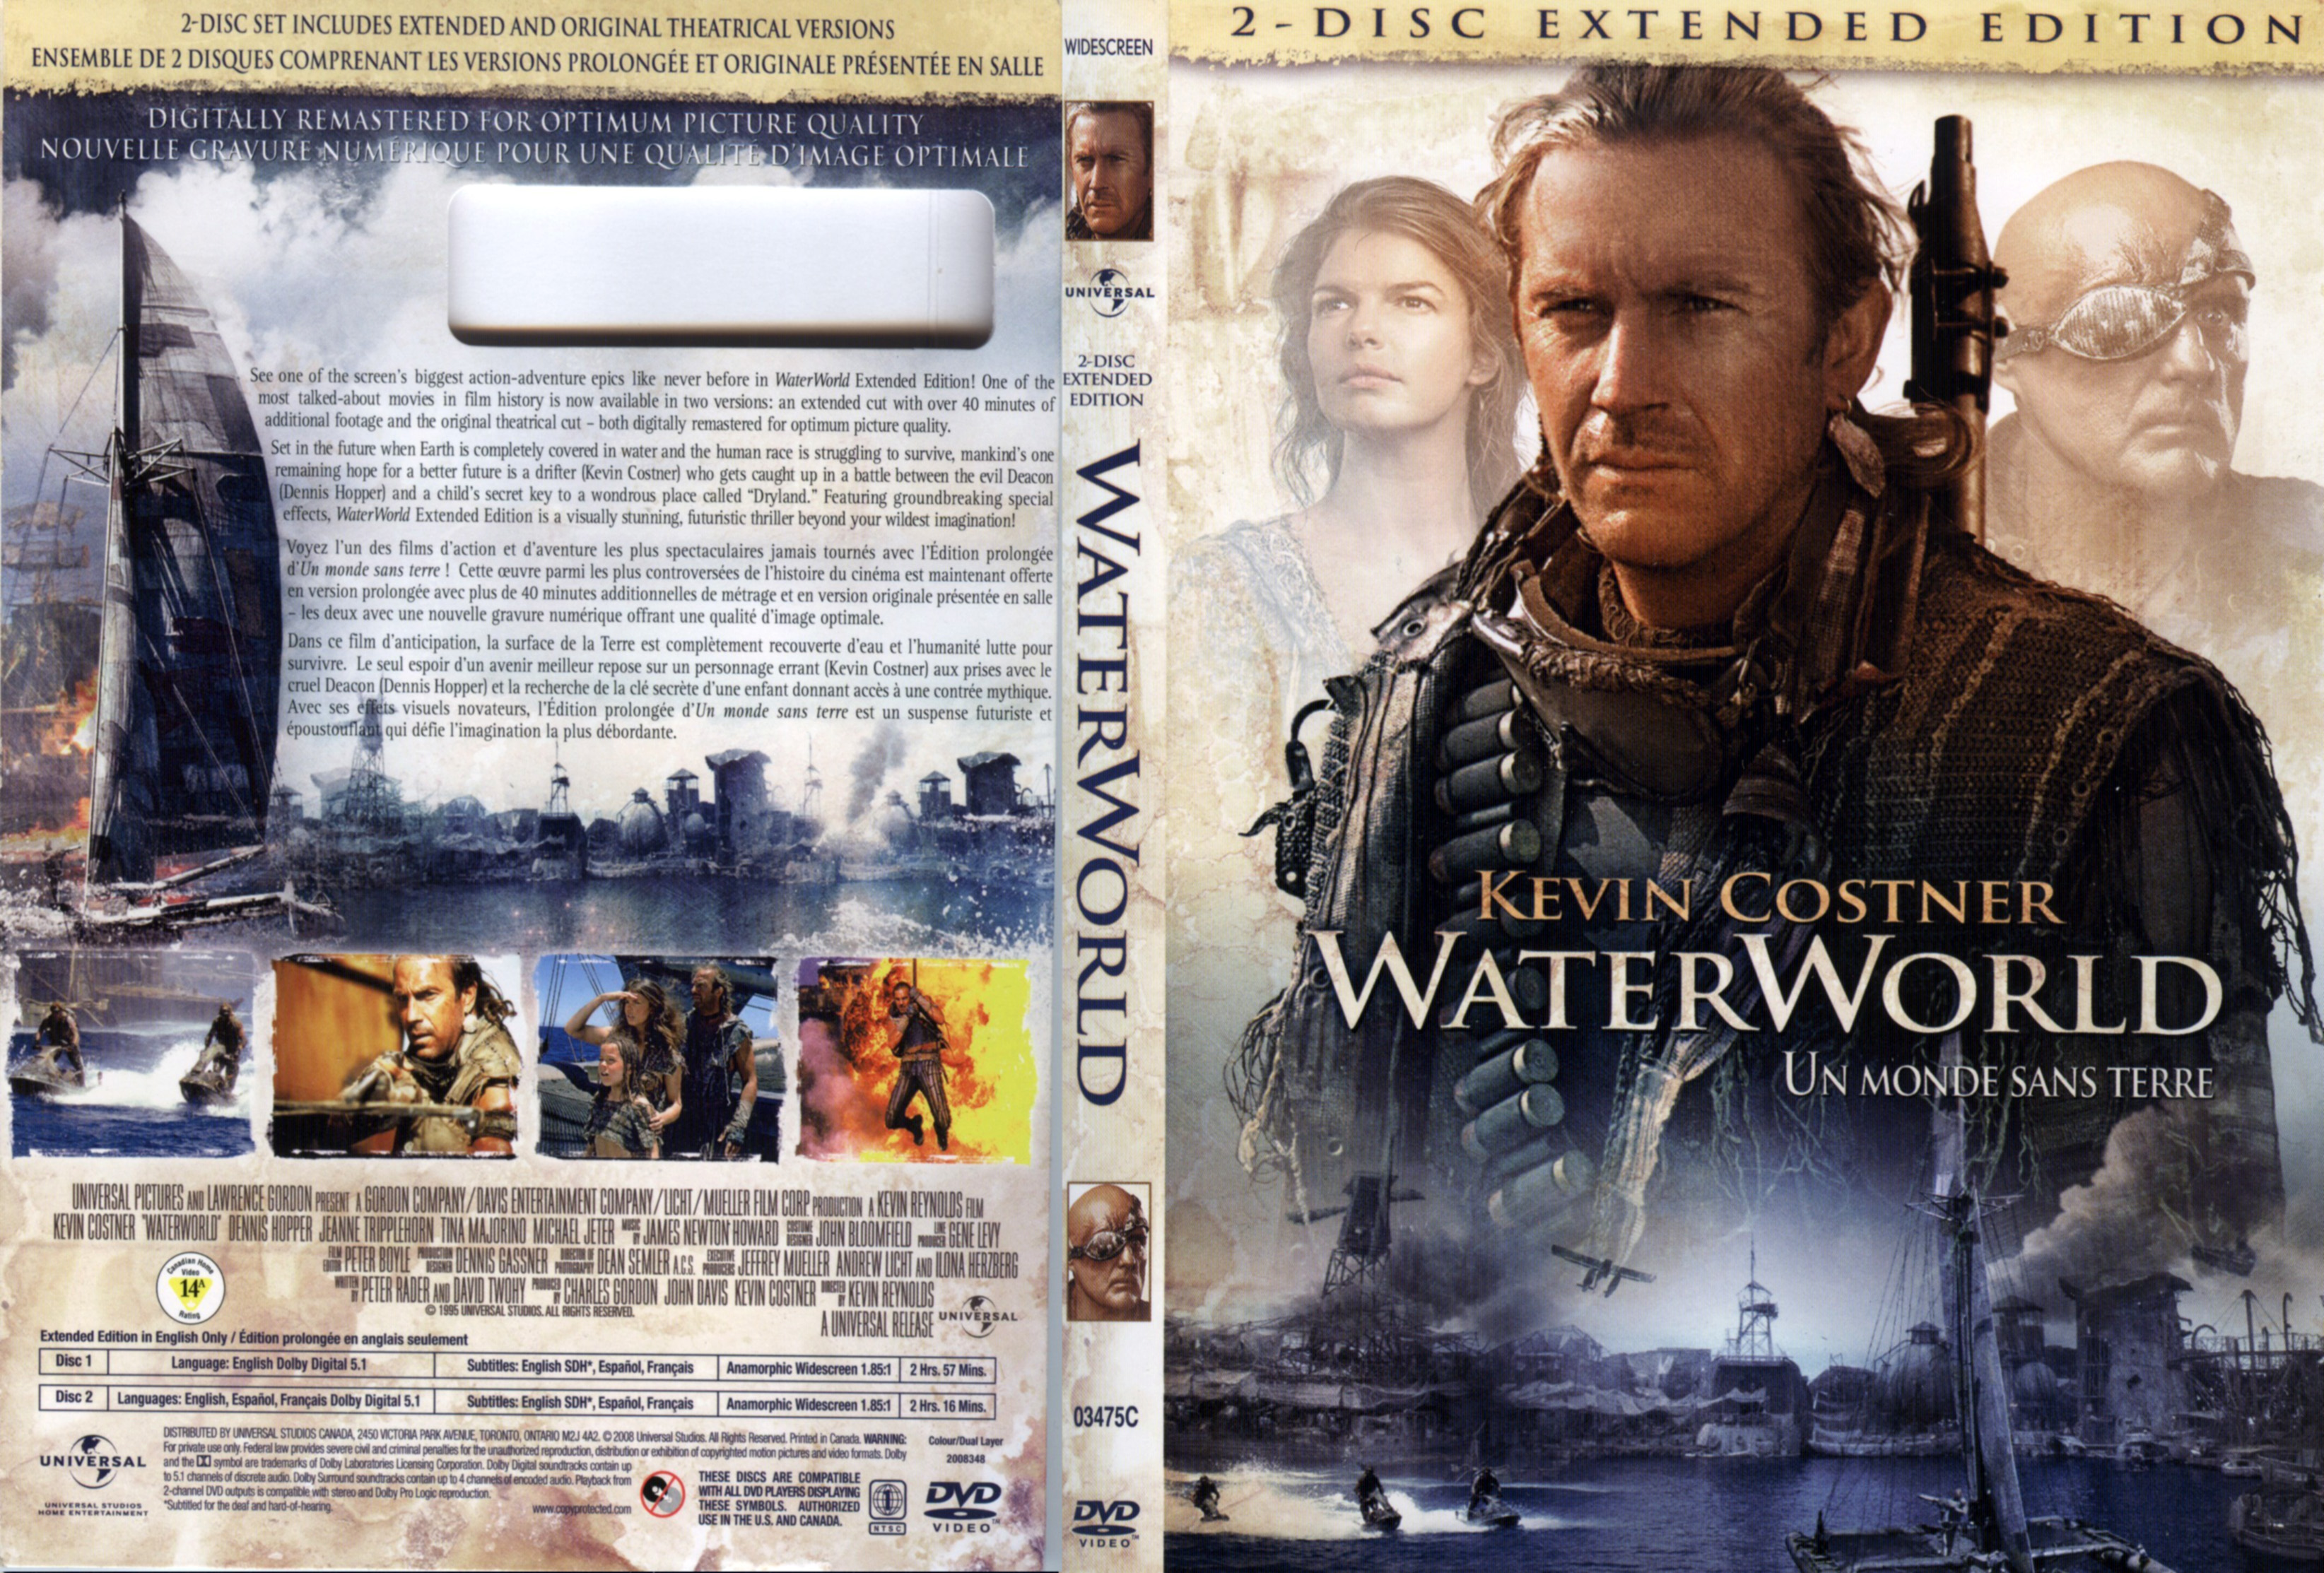 Jaquette DVD Waterworld v3